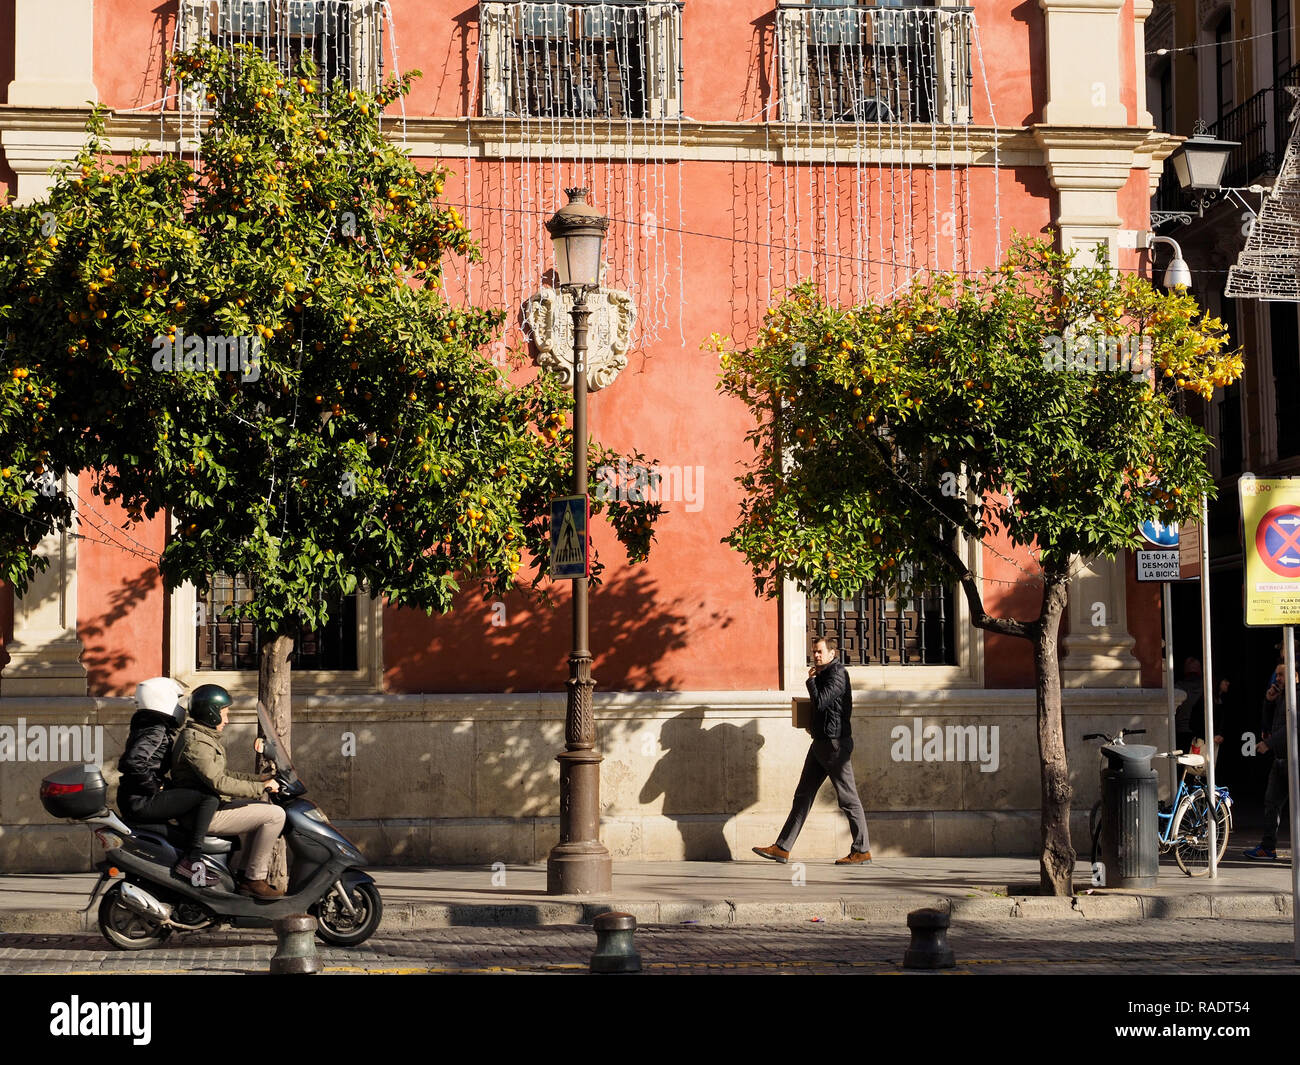 Sevilla, Andalusien, Spanien, street scene mit bunten Gebäude, typisch orange Bäume voller Früchte, und die Leute reiten ein scooter. Stockfoto